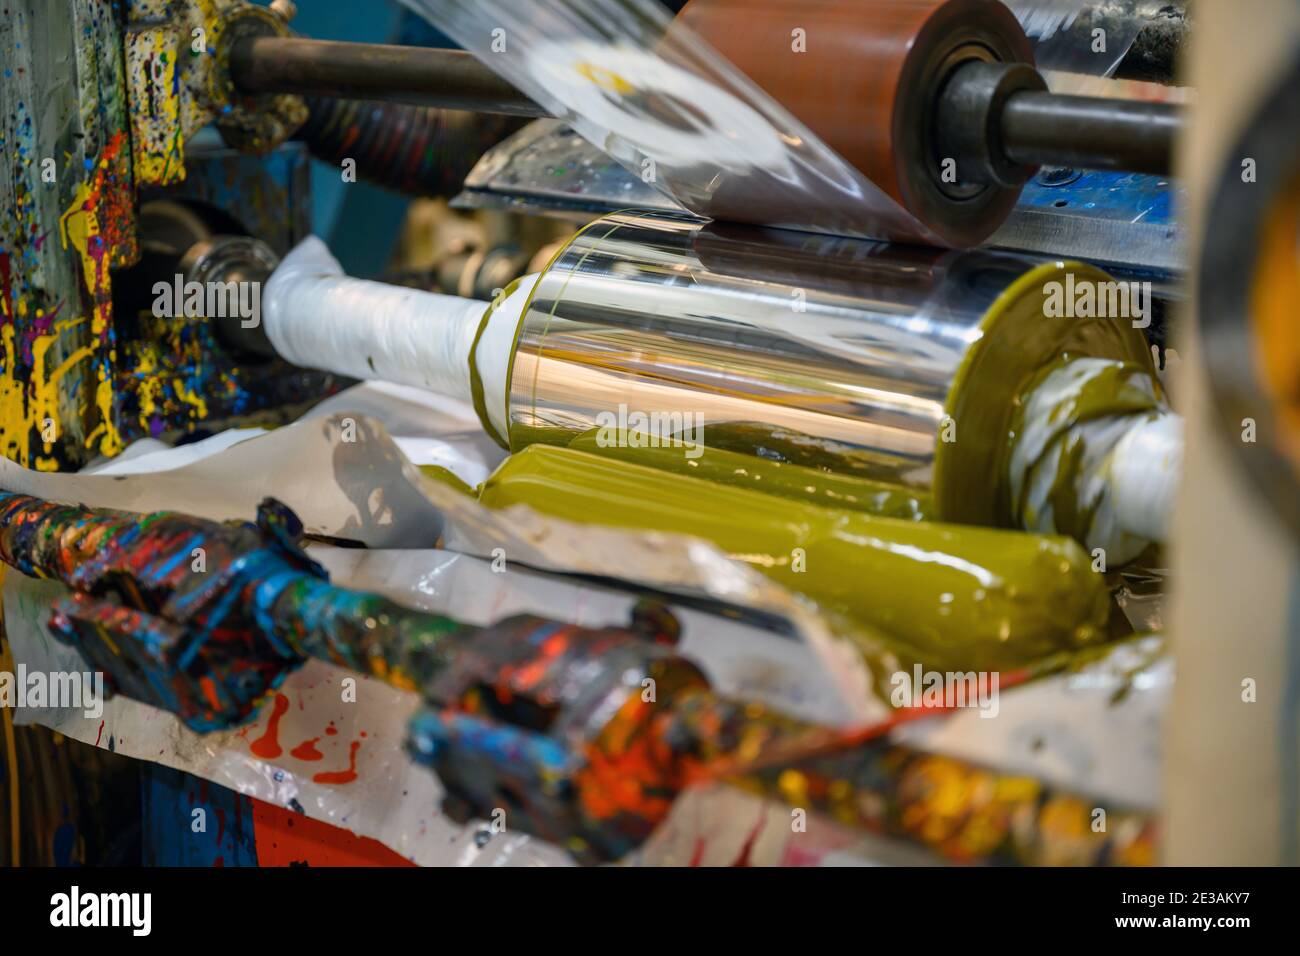 Tiefdruck-Plastikbeutel-Druckmaschinen arbeiten mit einer hohen Geschwindigkeit, um Bilder mit Farbe in der Fabrik zu drucken. Stockfoto